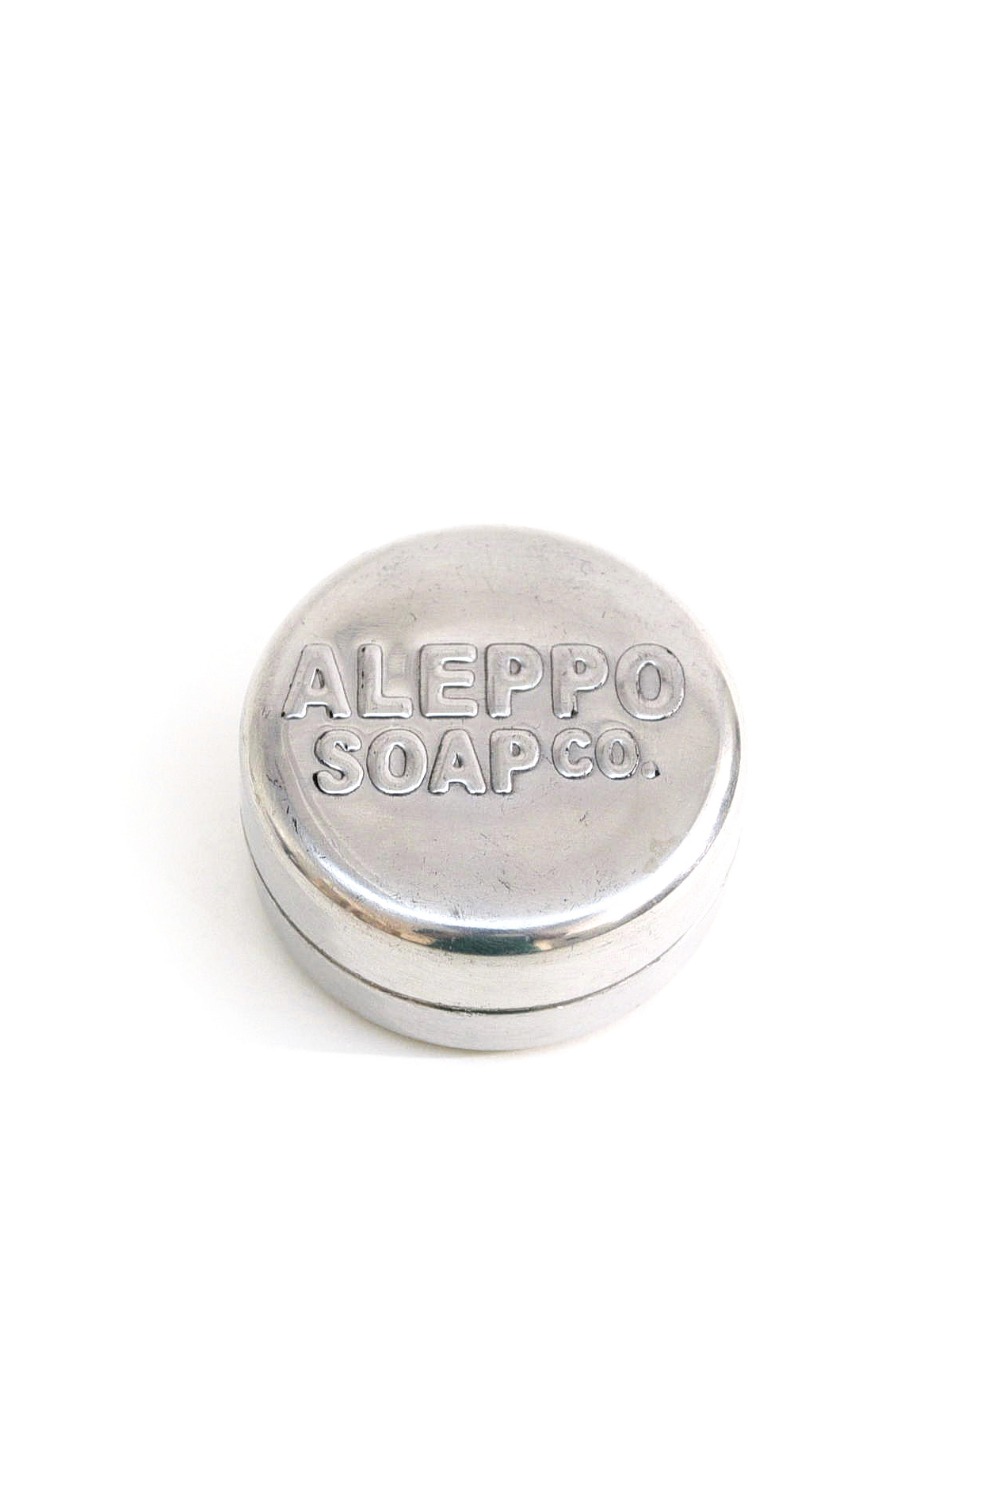 Aleppo Soap Soap Box round